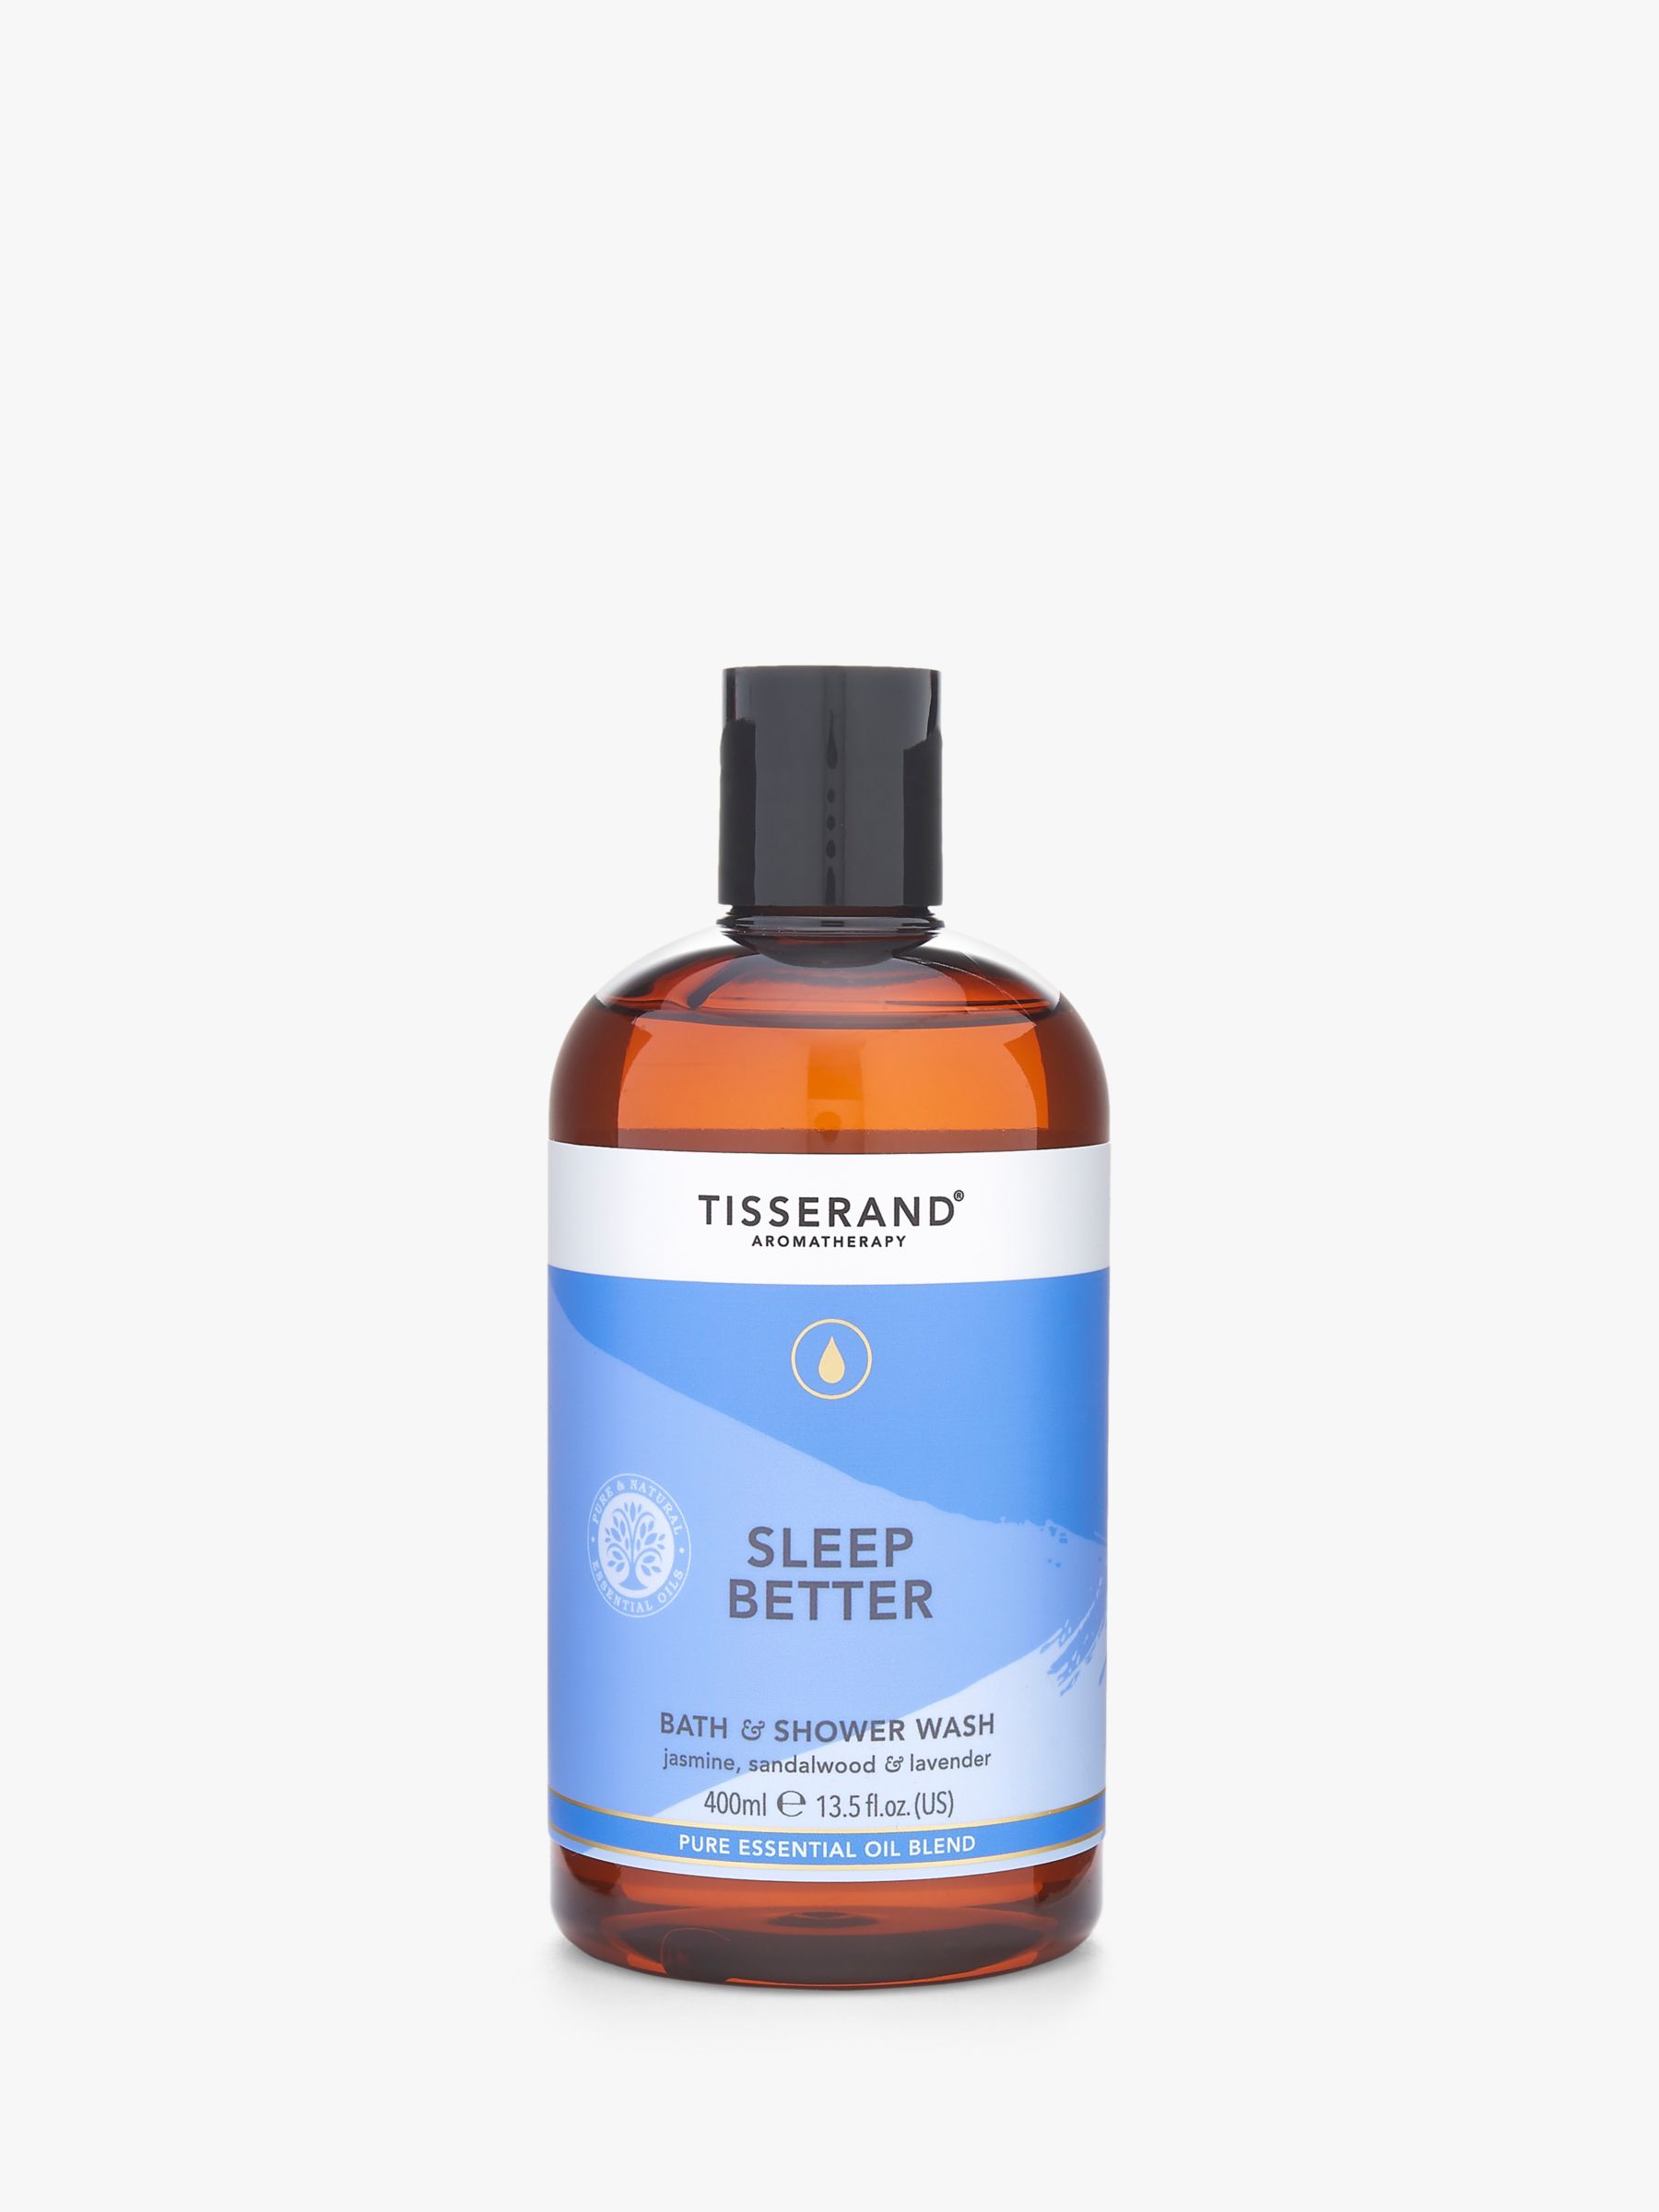 Tisserand Aromatherapy Sleep Better Bath & Shower Wash, 400ml